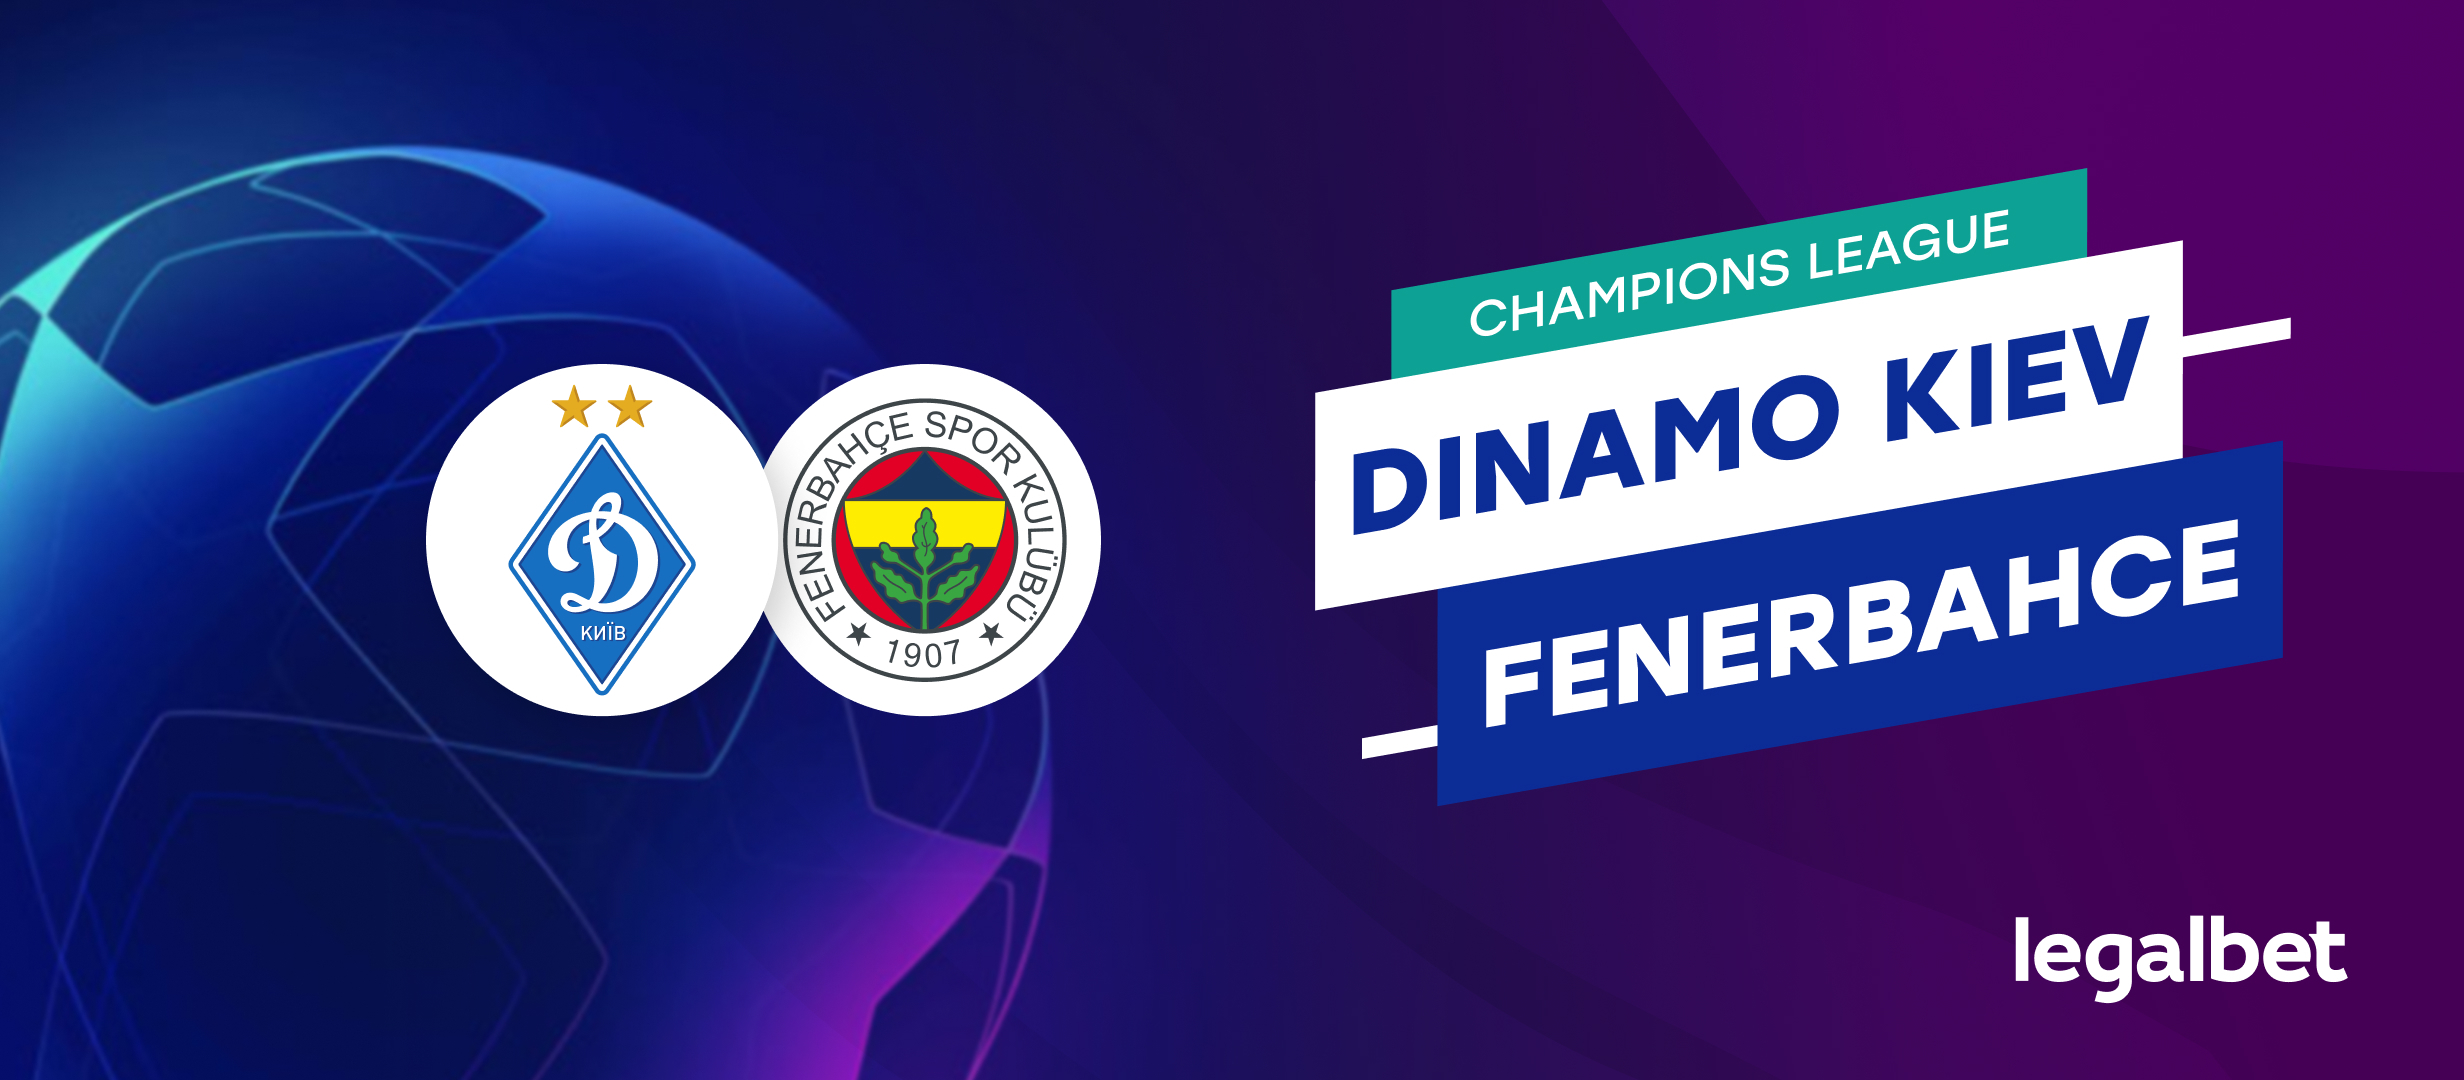 Dinamo Kiev - Fenerbahce, ponturi pariuri turul 2 preliminar din Champions League